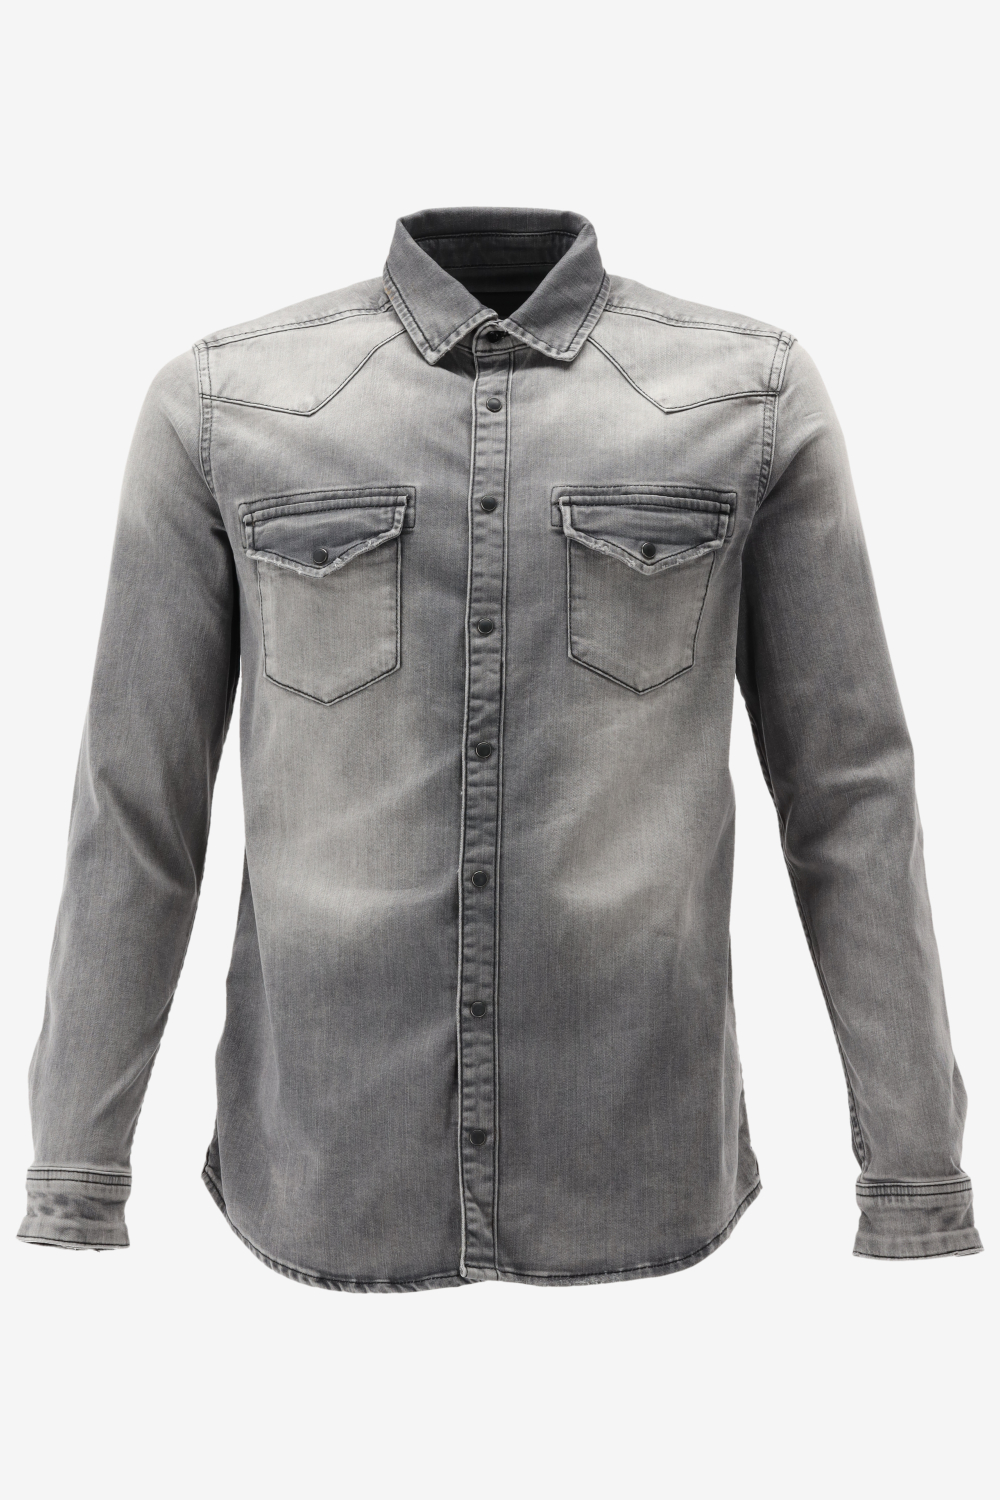 Purewhite -  Heren Slim Fit   Overhemd  - Grijs - Maat S